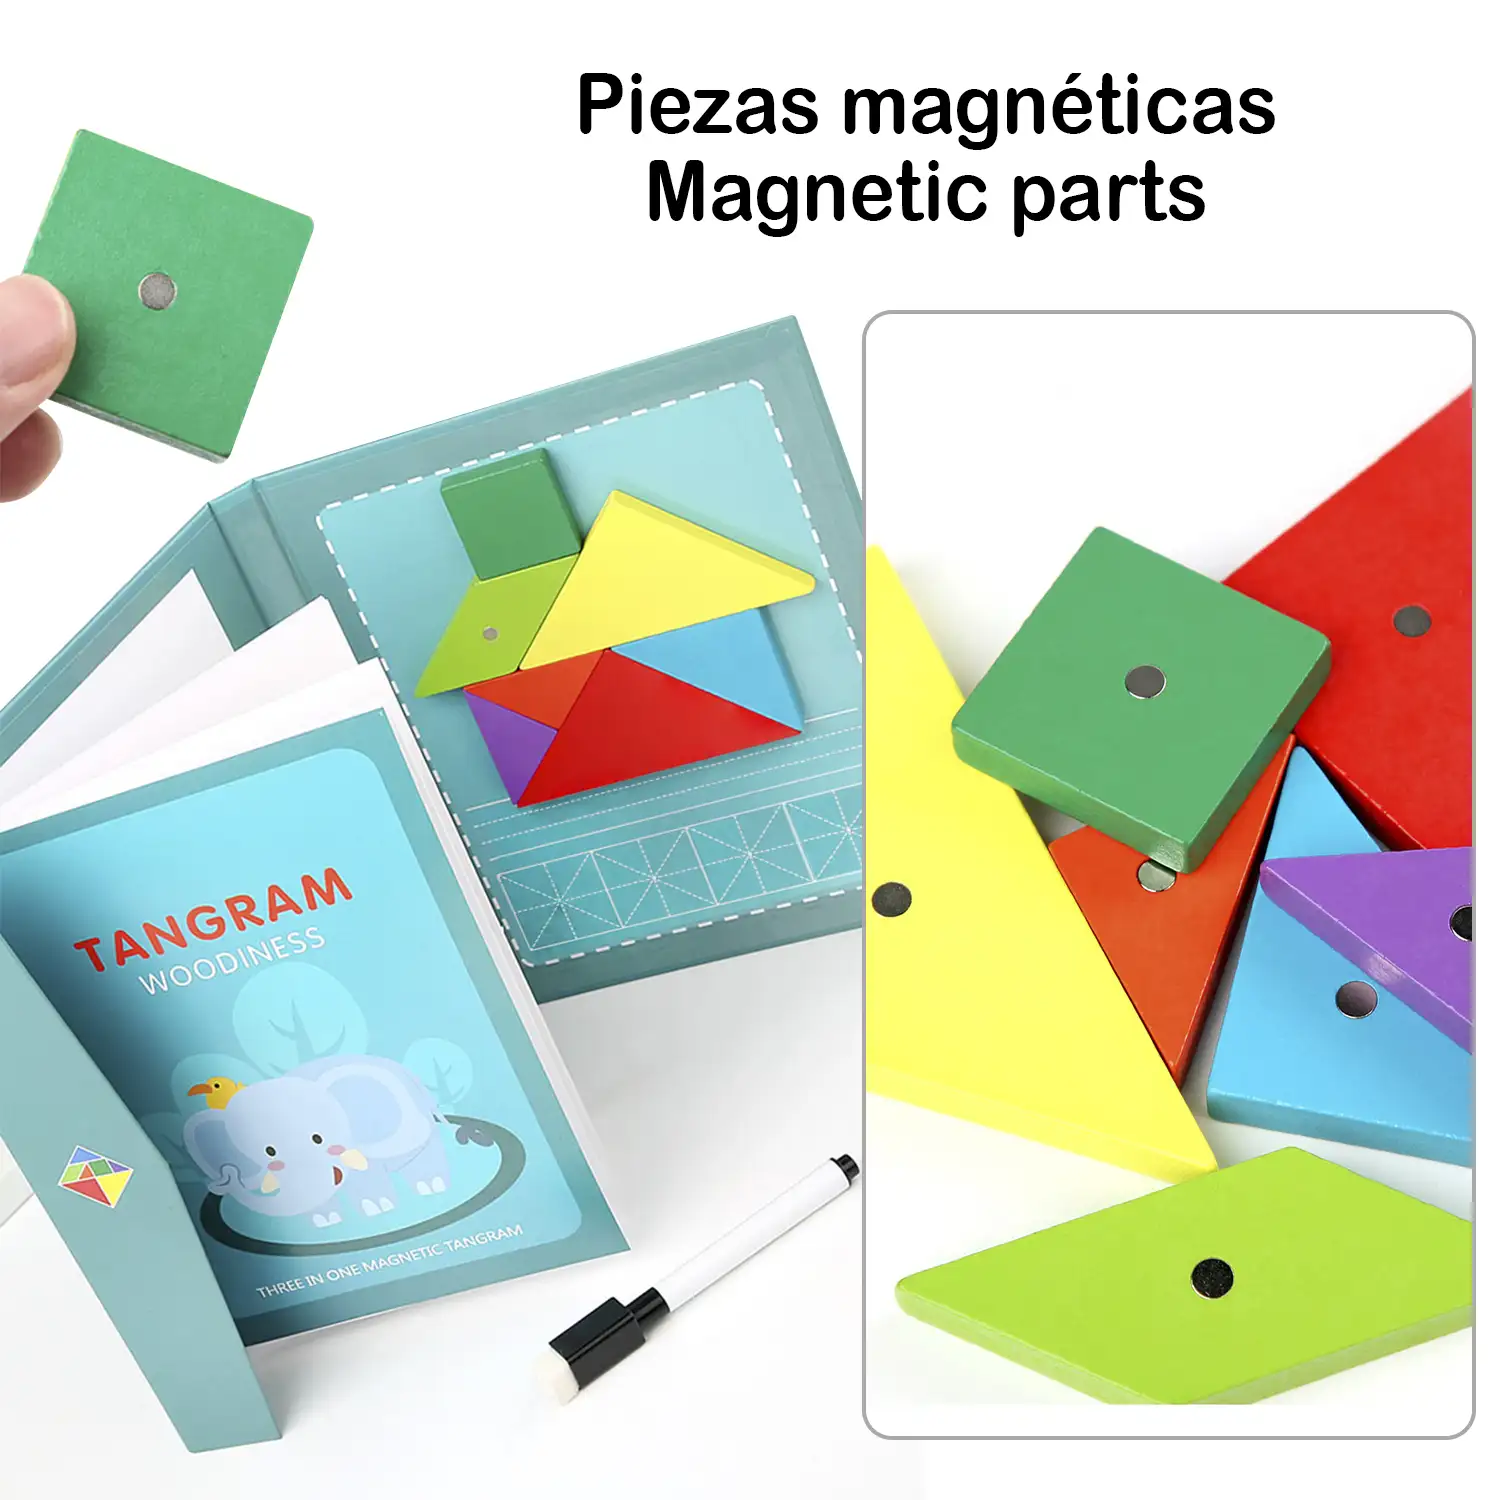 Libro Tangram con piezas de madera magnéticas. Incluye más de 90 desafíos y soluciones.